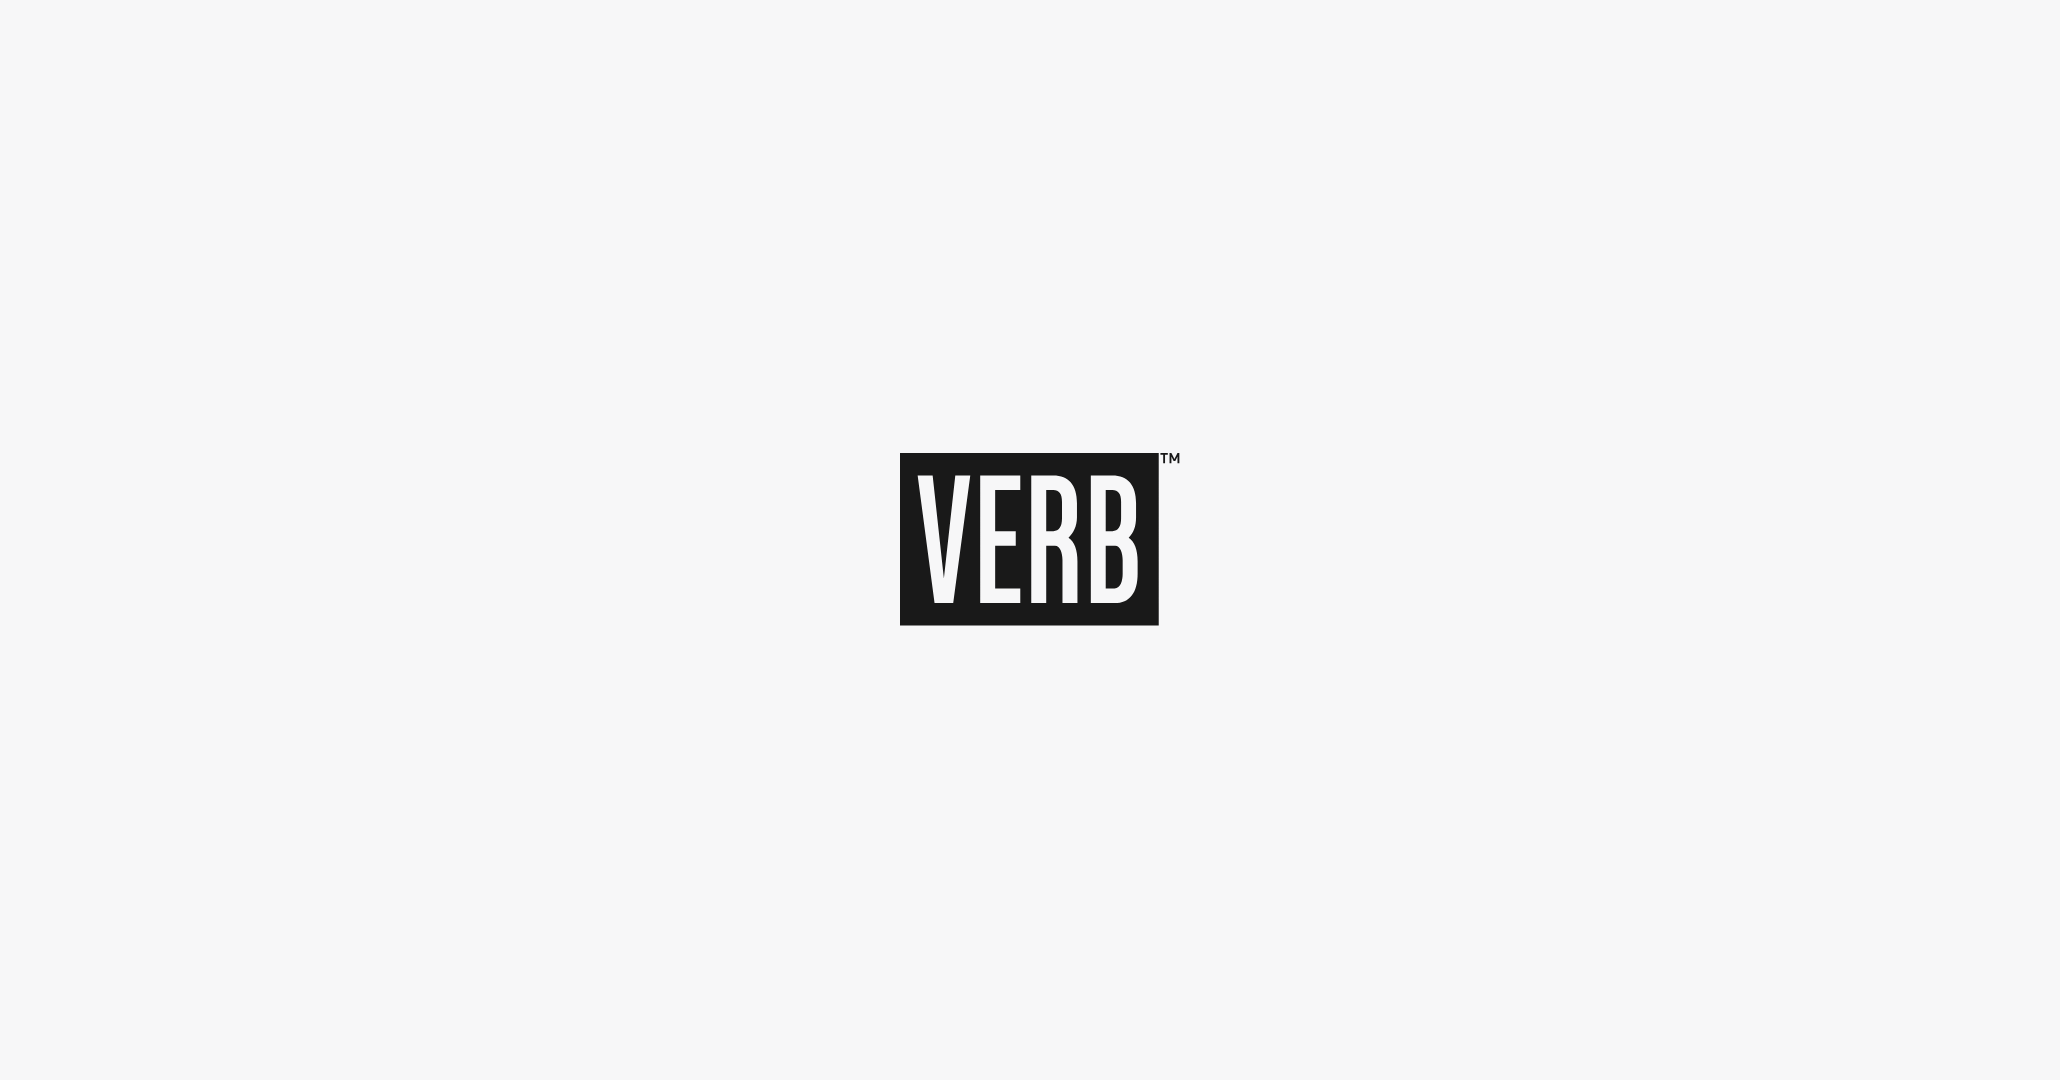 Verb Energy Logo